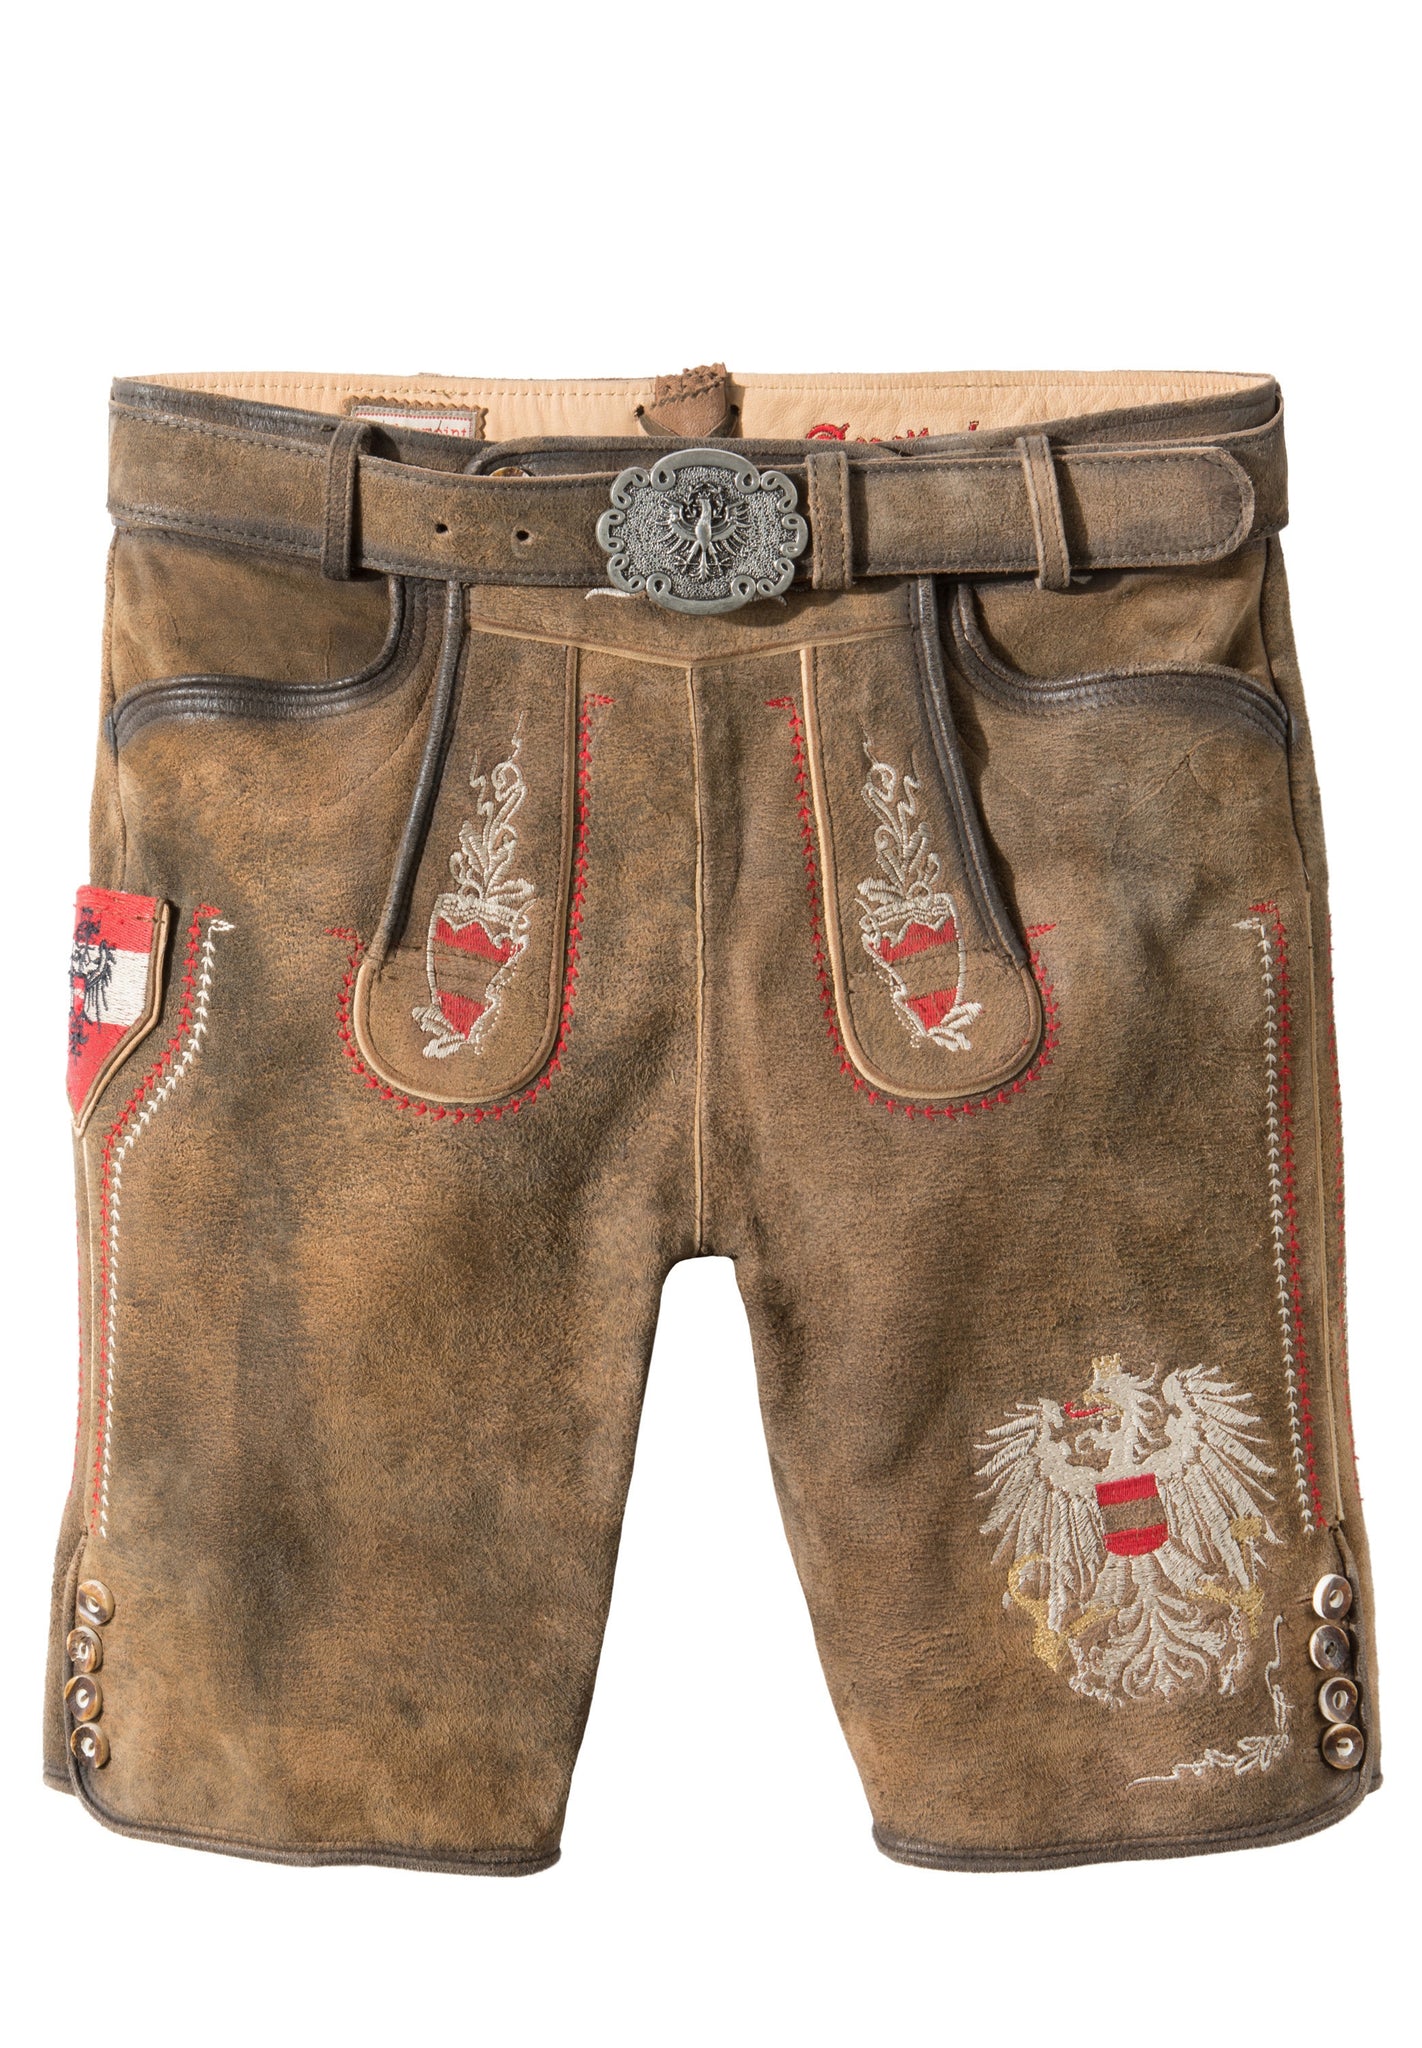 Lederhosen Austria-Bua Men Trachten Lederhosen Leather Pants hemp patc –  German Specialty Imports llc